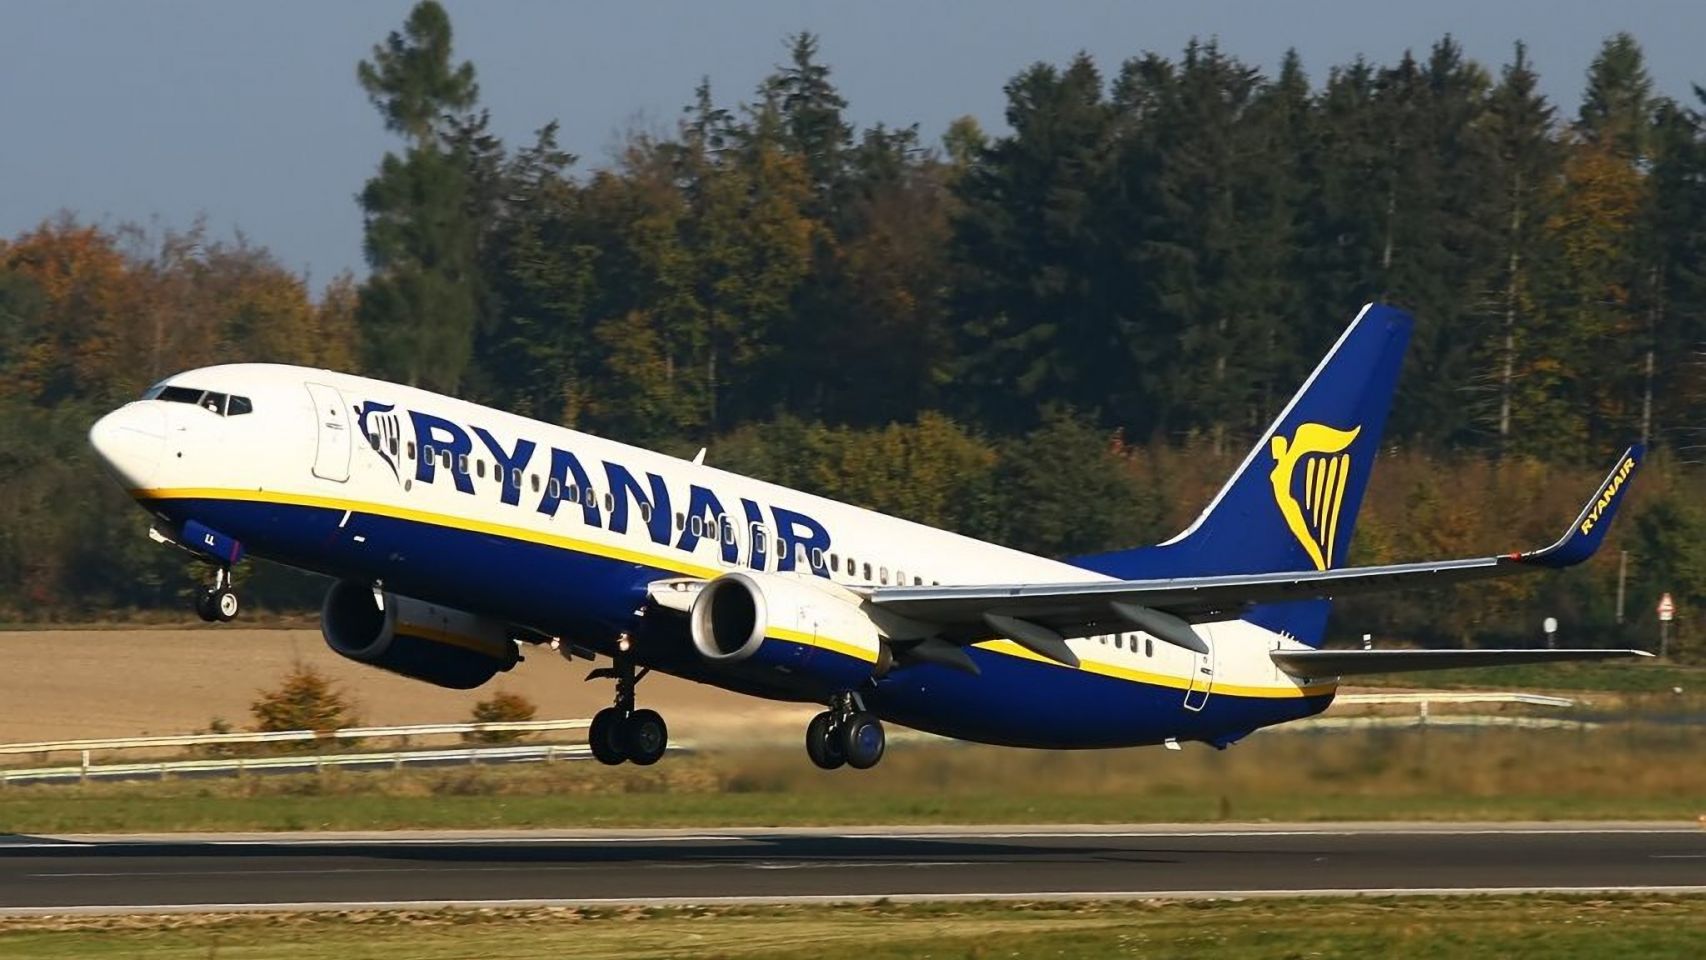 Un avión de la aerolínea irlandesa Ryanair.